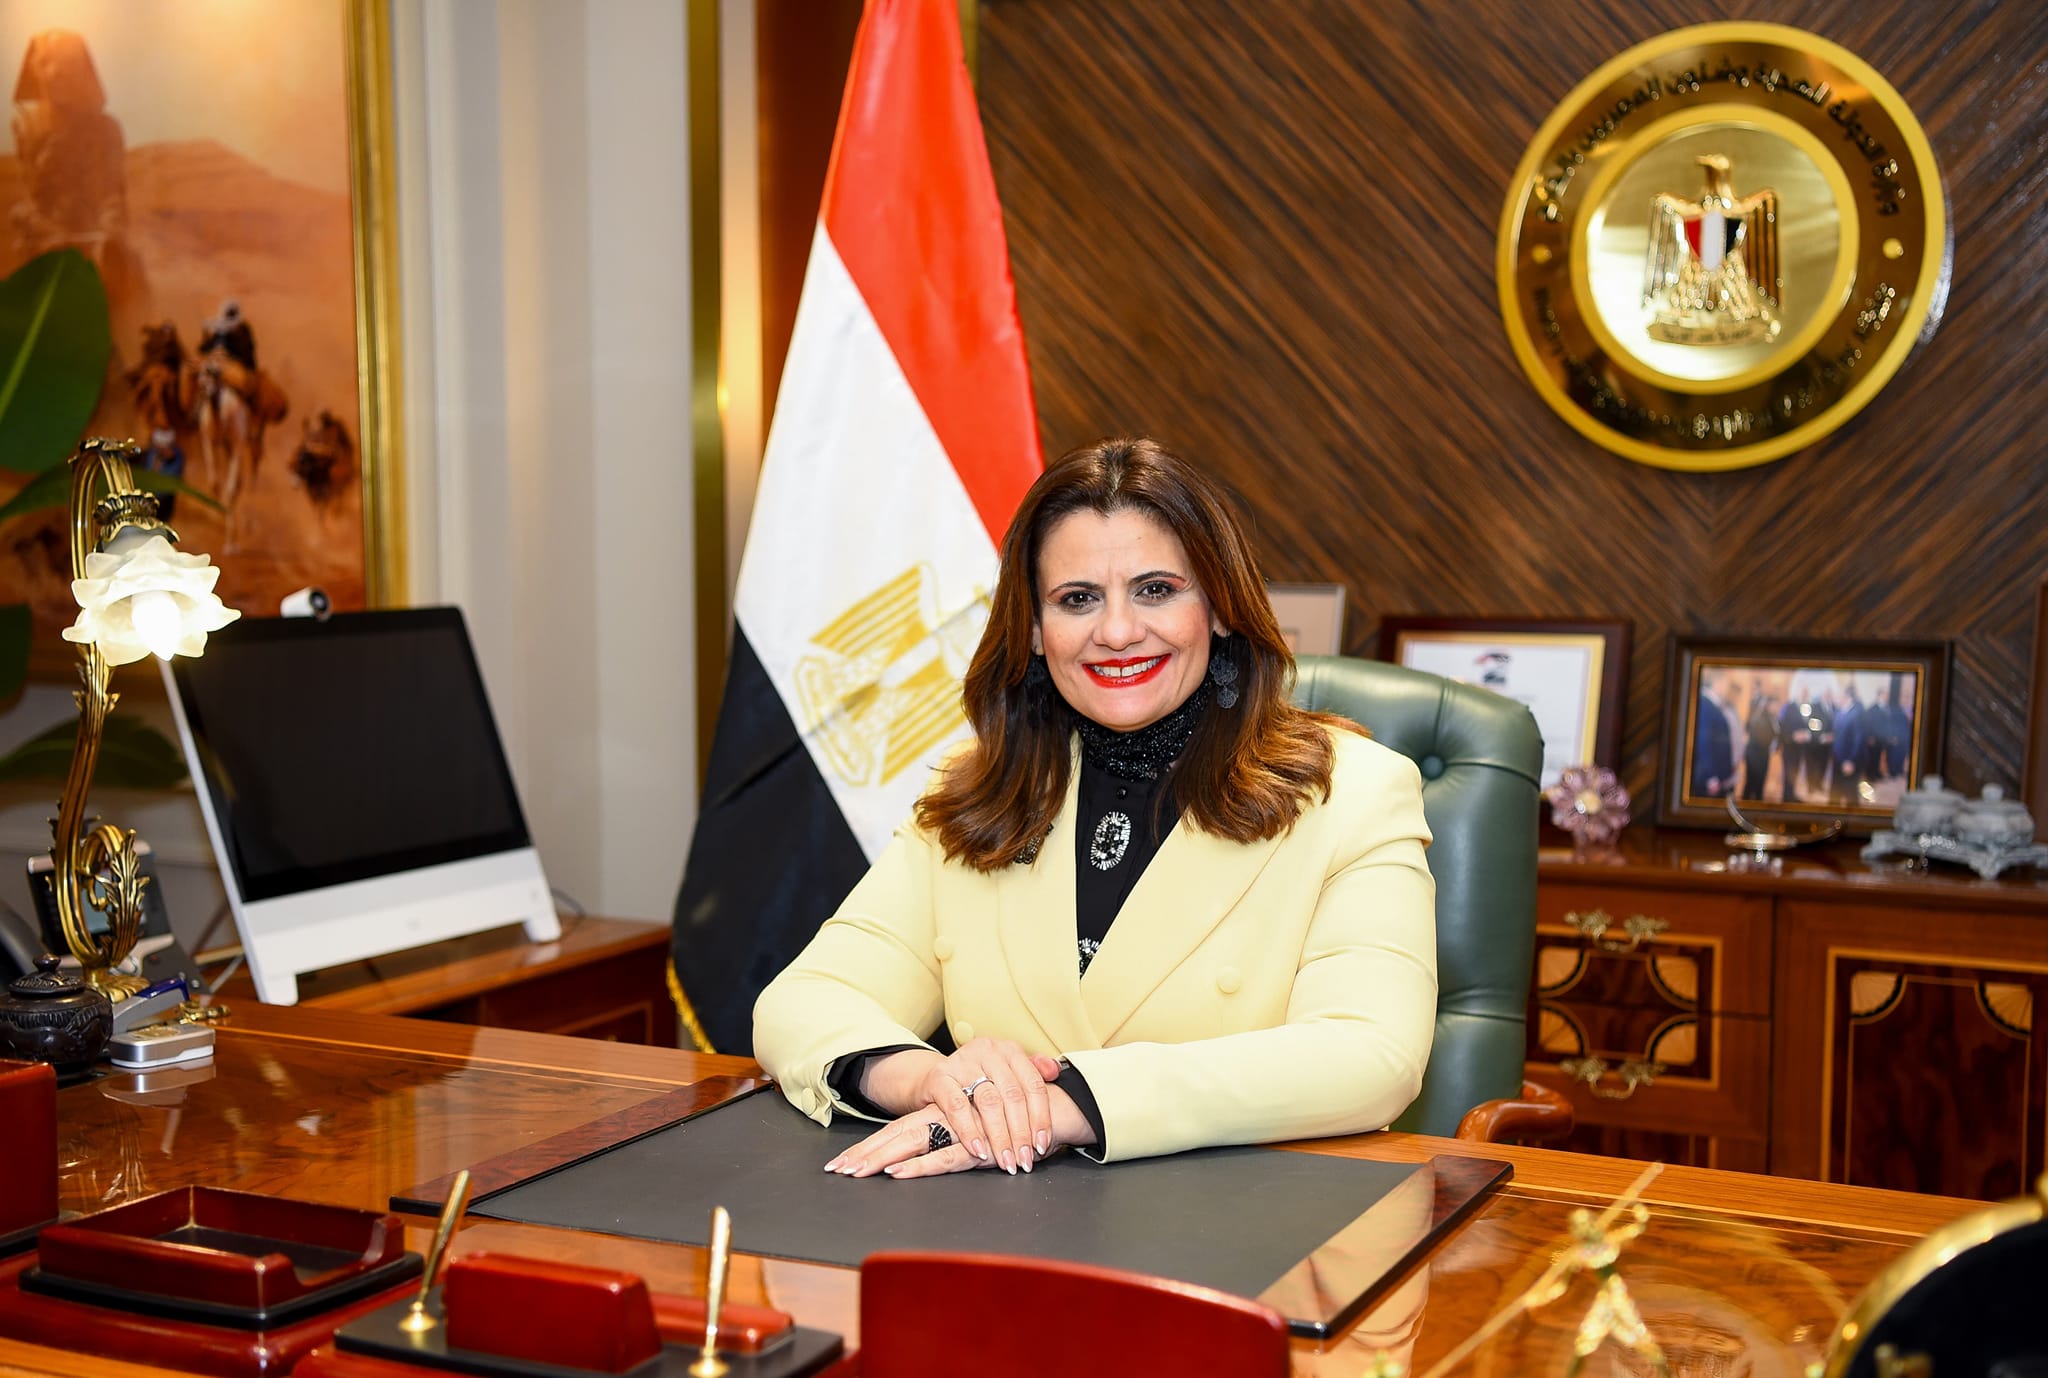 وزيرة الهجرة: دور الوزارة لا يقتصر على دعم المصريين خارج البلاد فقط بل يمتد إلى رعاية مصالحهم بالداخل